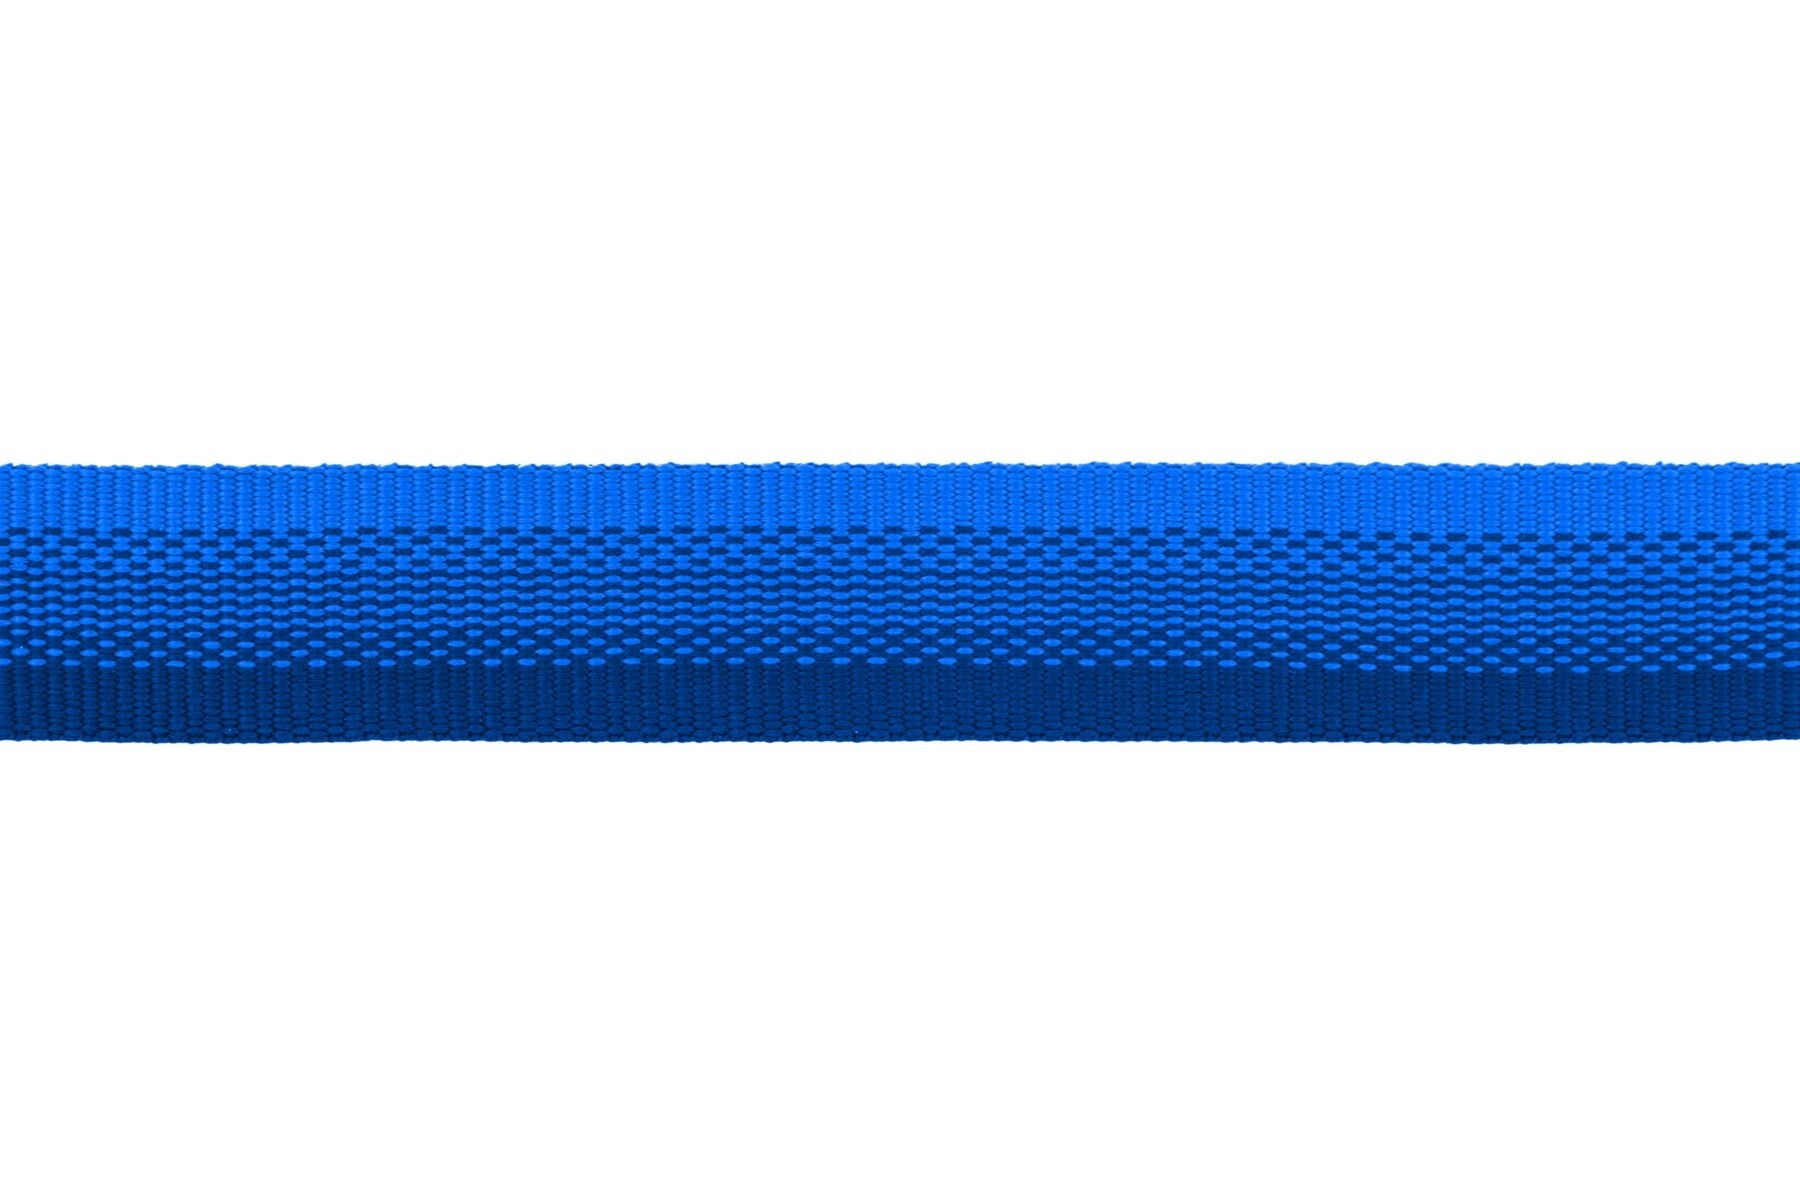 Collar para Perros Modelo Front Range Collar Azul (Blue Pool) de Ruffwear